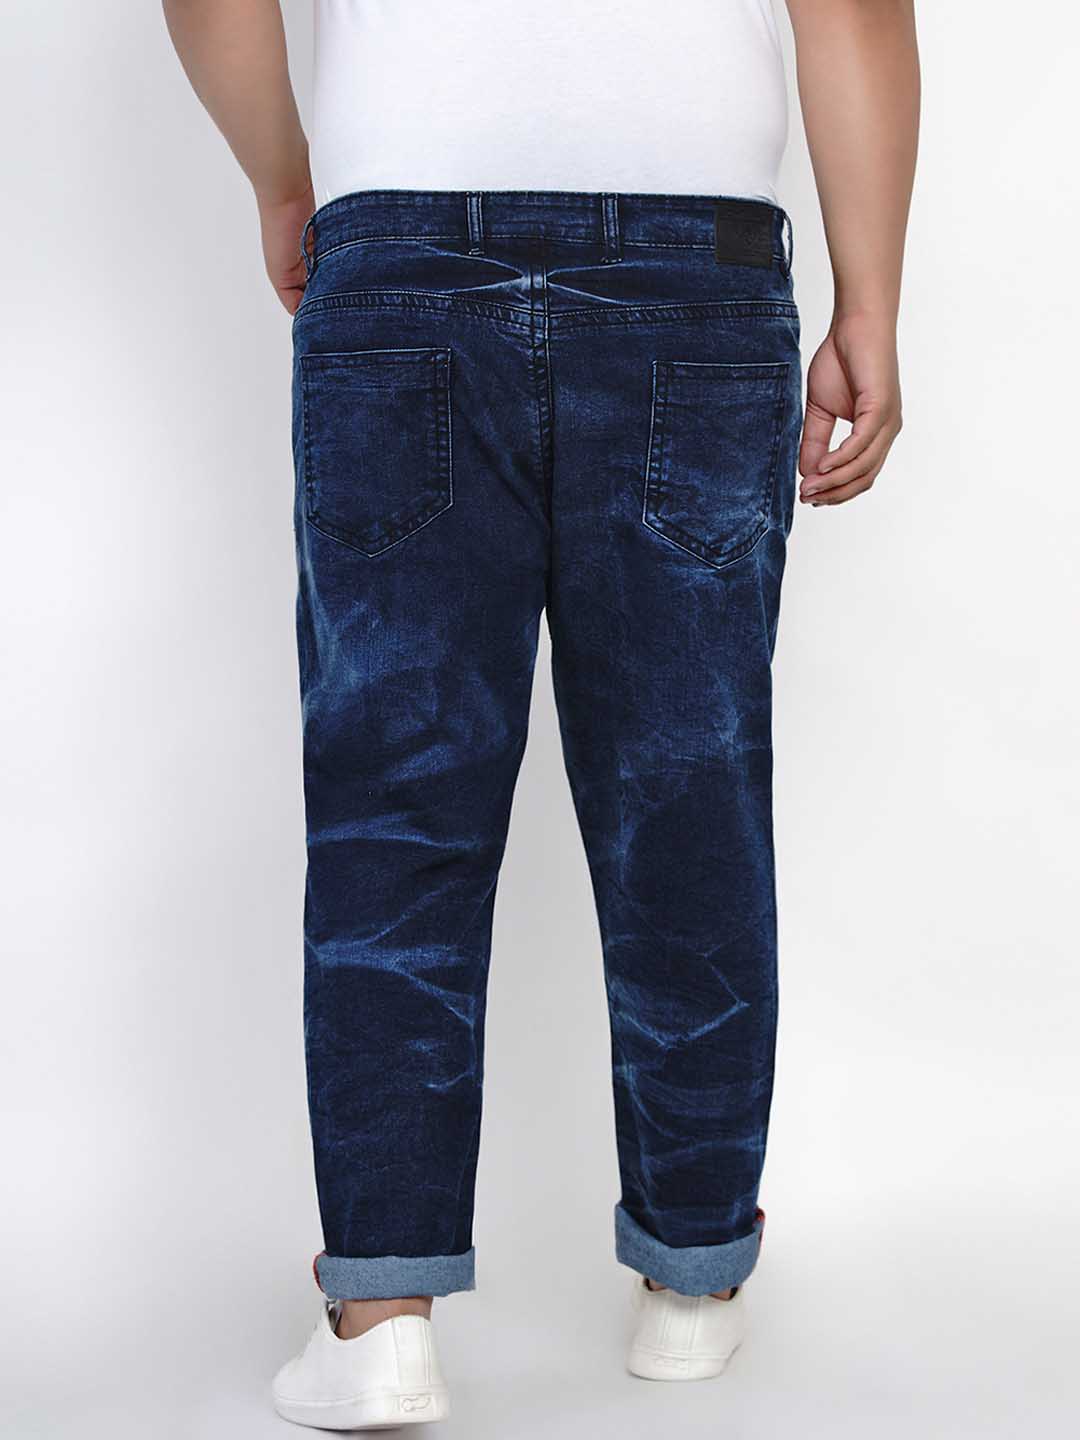 bottomwear/jeans/JPJ1292/jpj1292-5.jpg